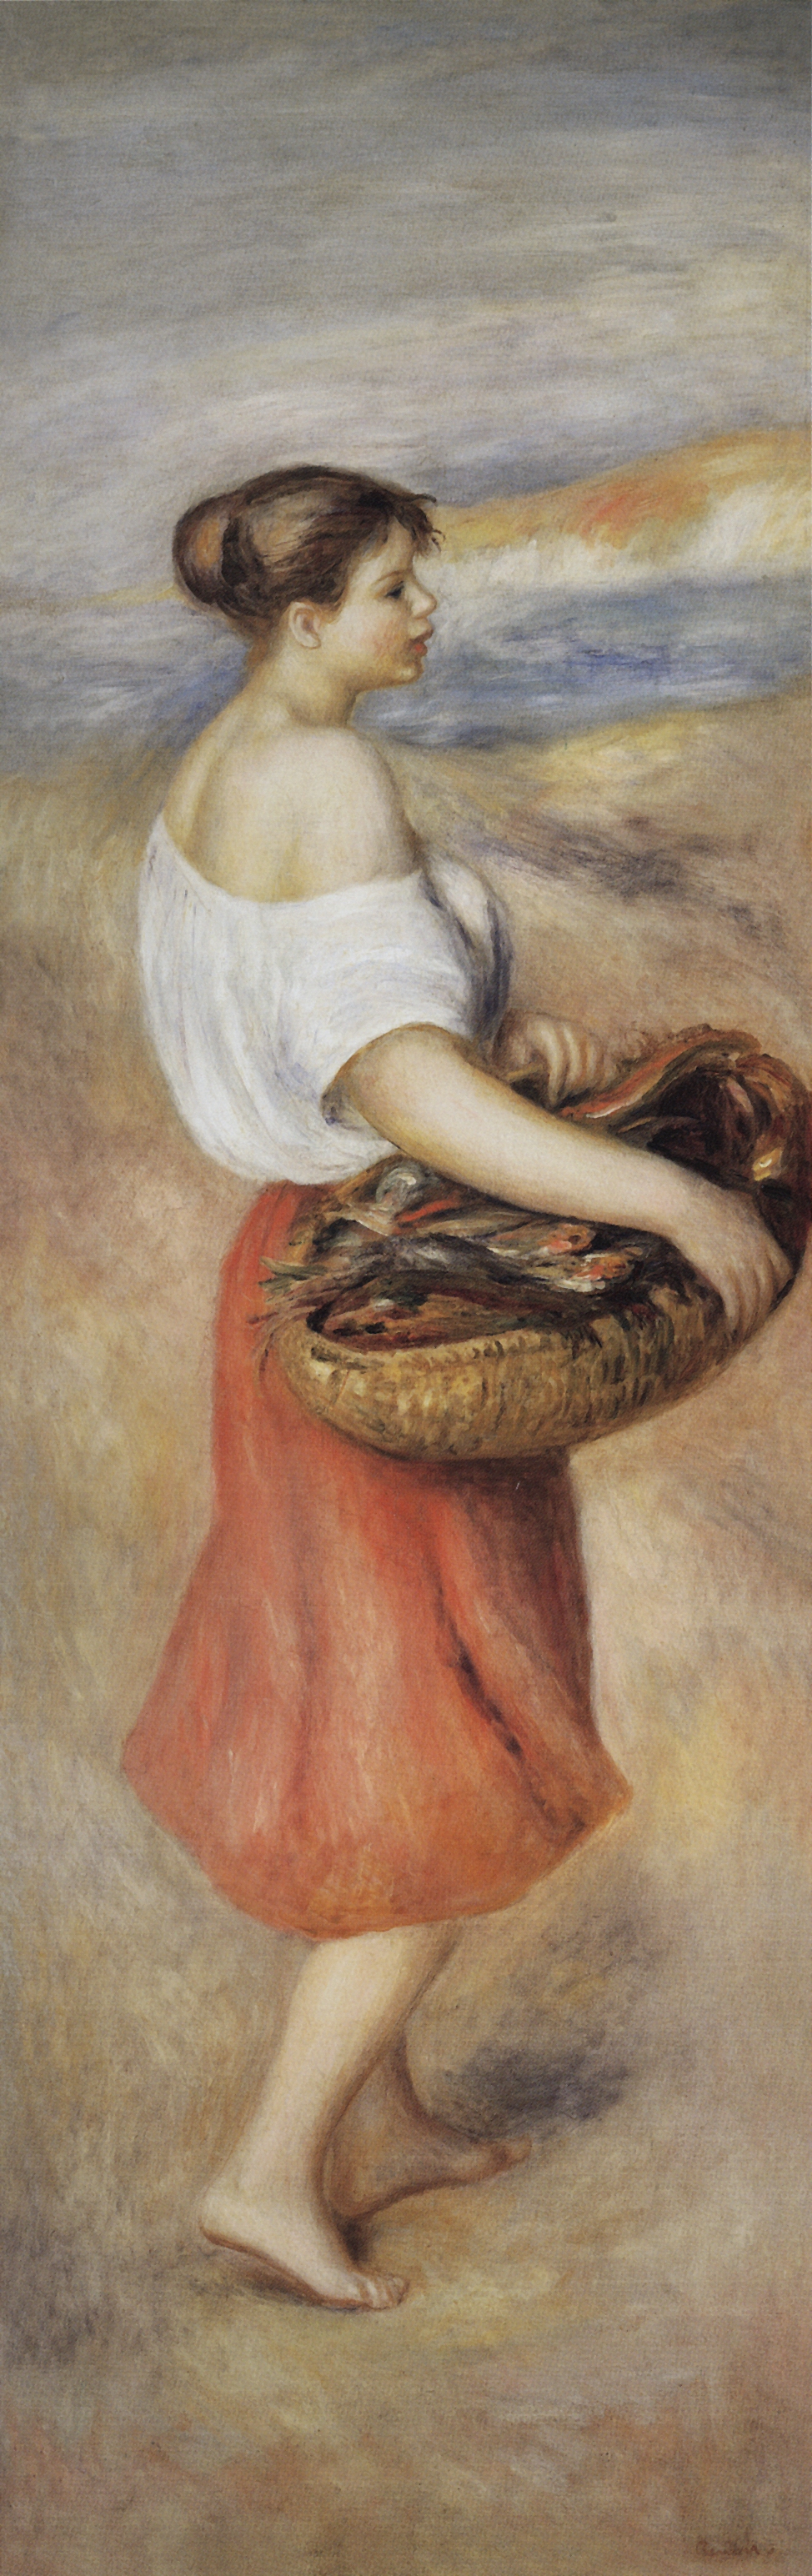 Ренуар. Девушка с корзиной рыбы. Около 1889